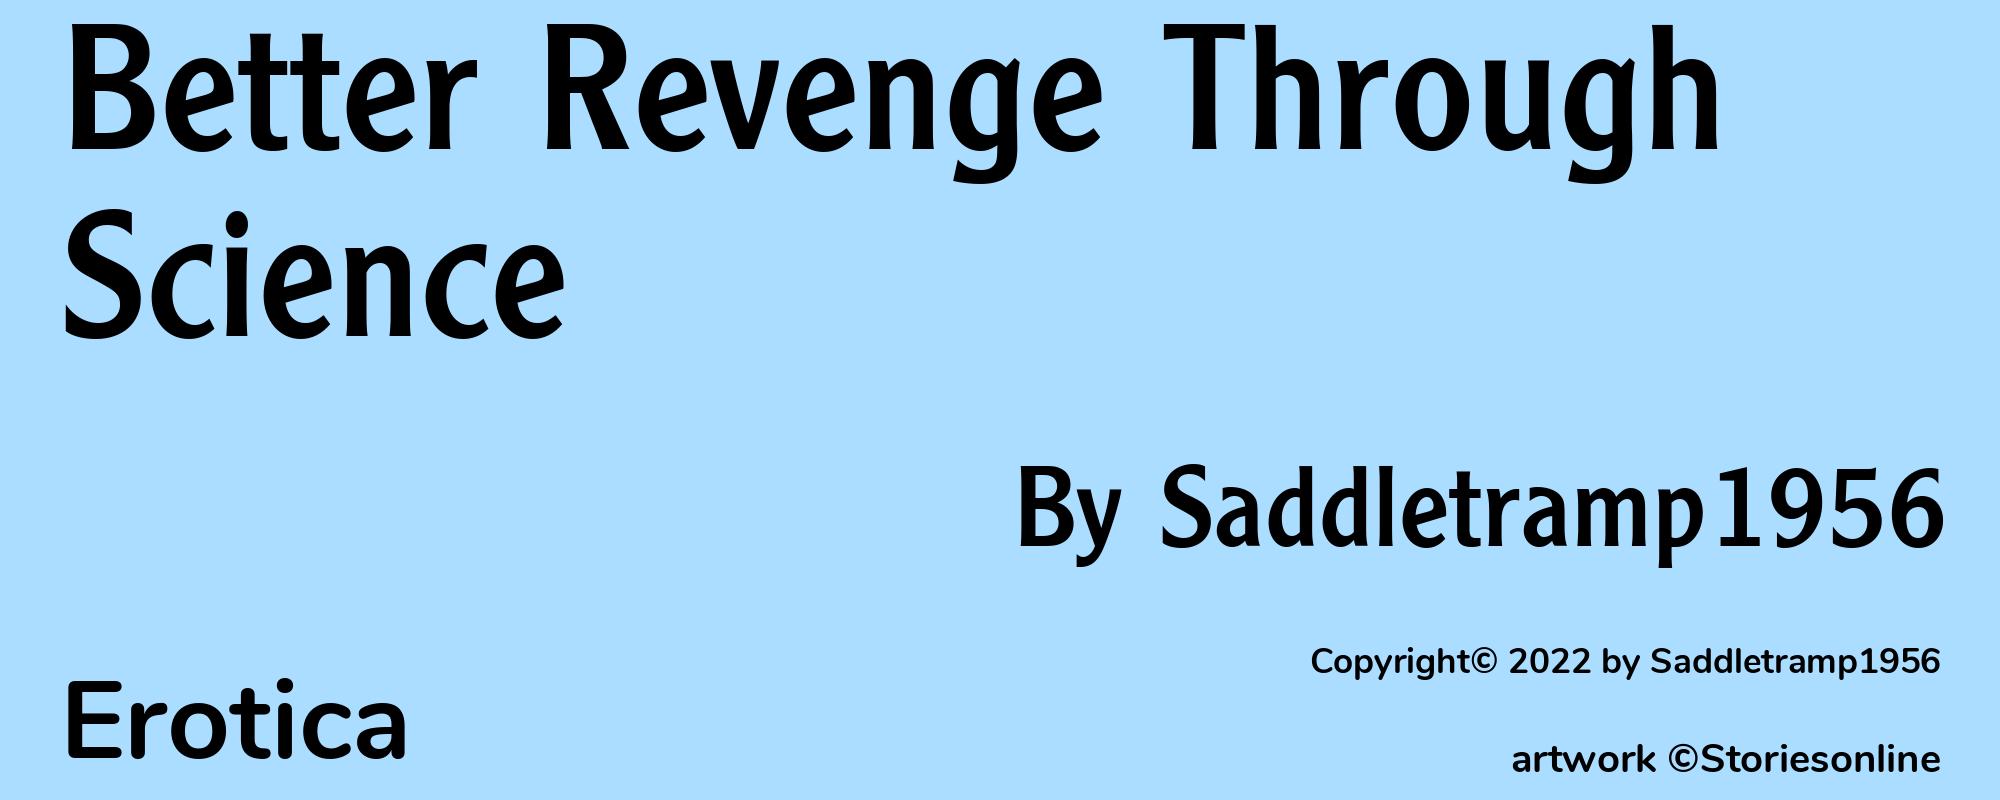 Better Revenge Through Science - Cover